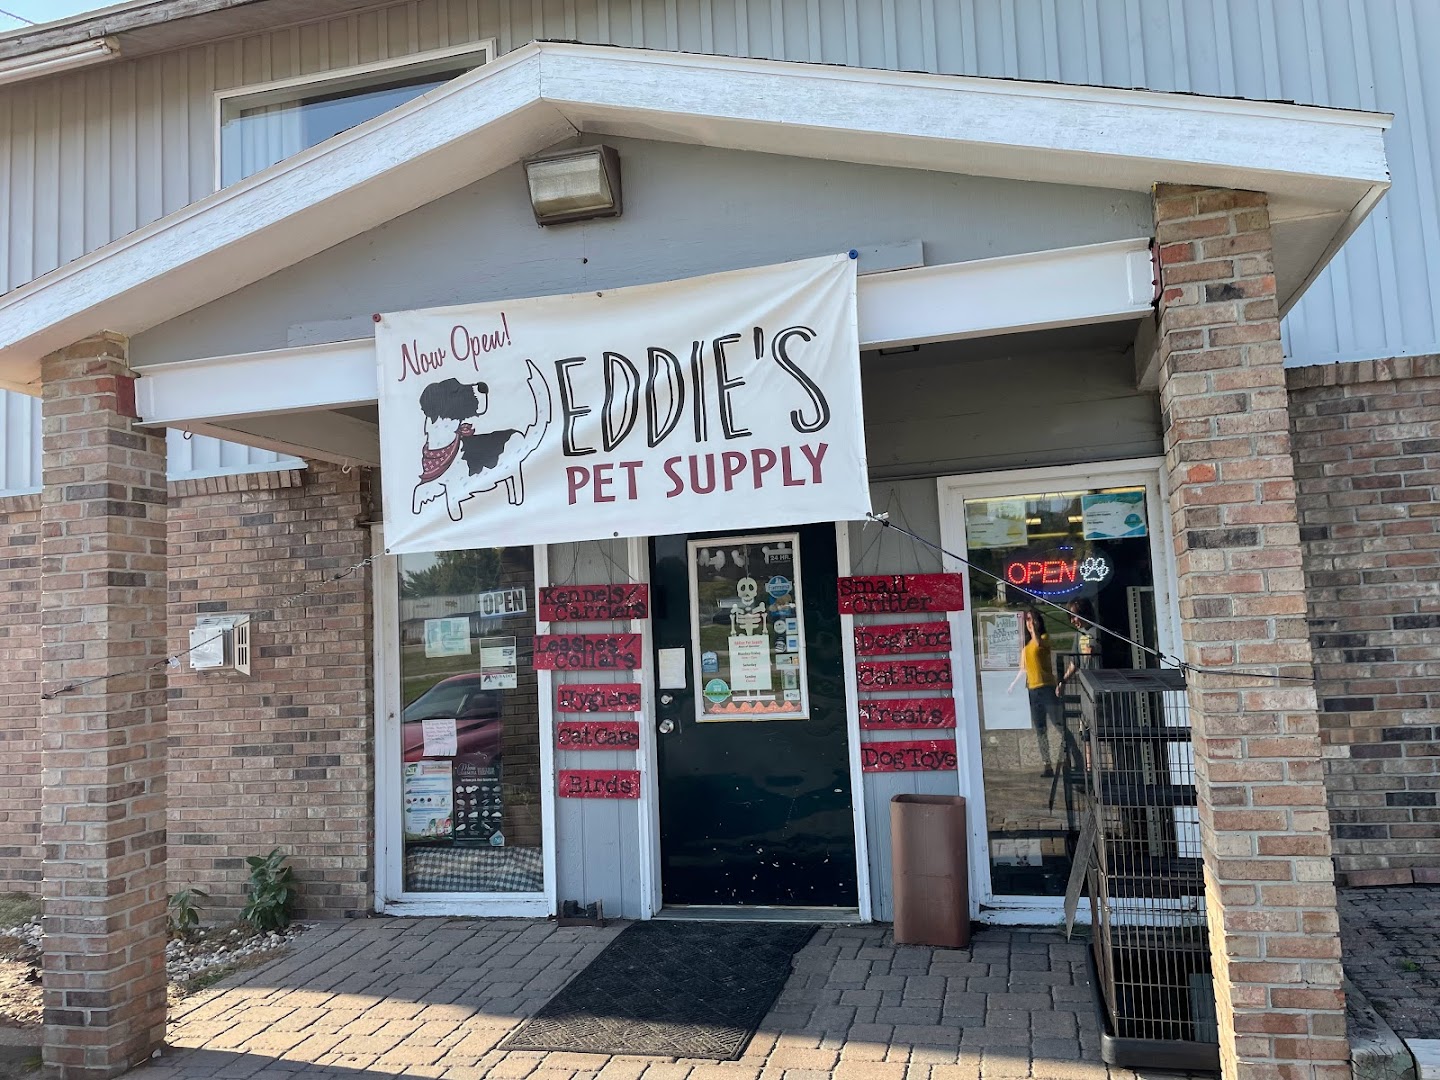 Eddie's Pet Supply